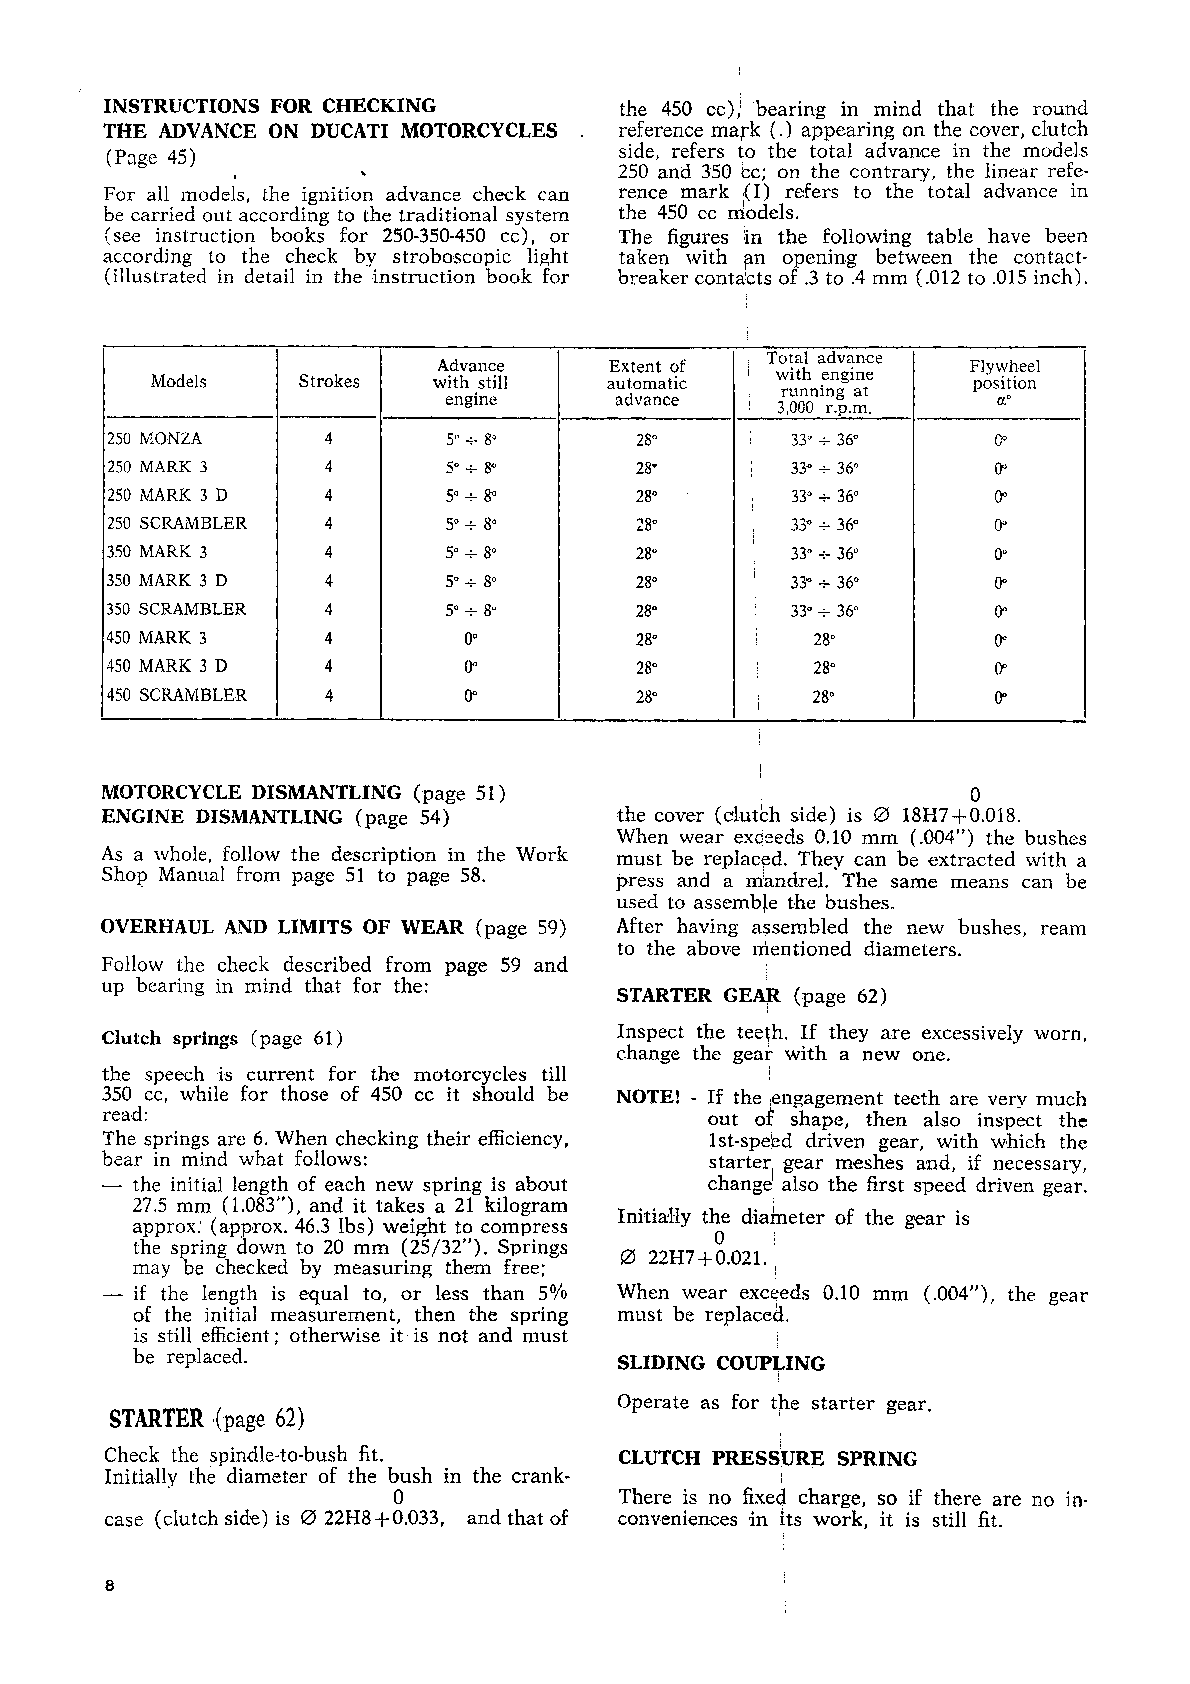 1968-1970 Ducati 350 Mark 3 Service Manual